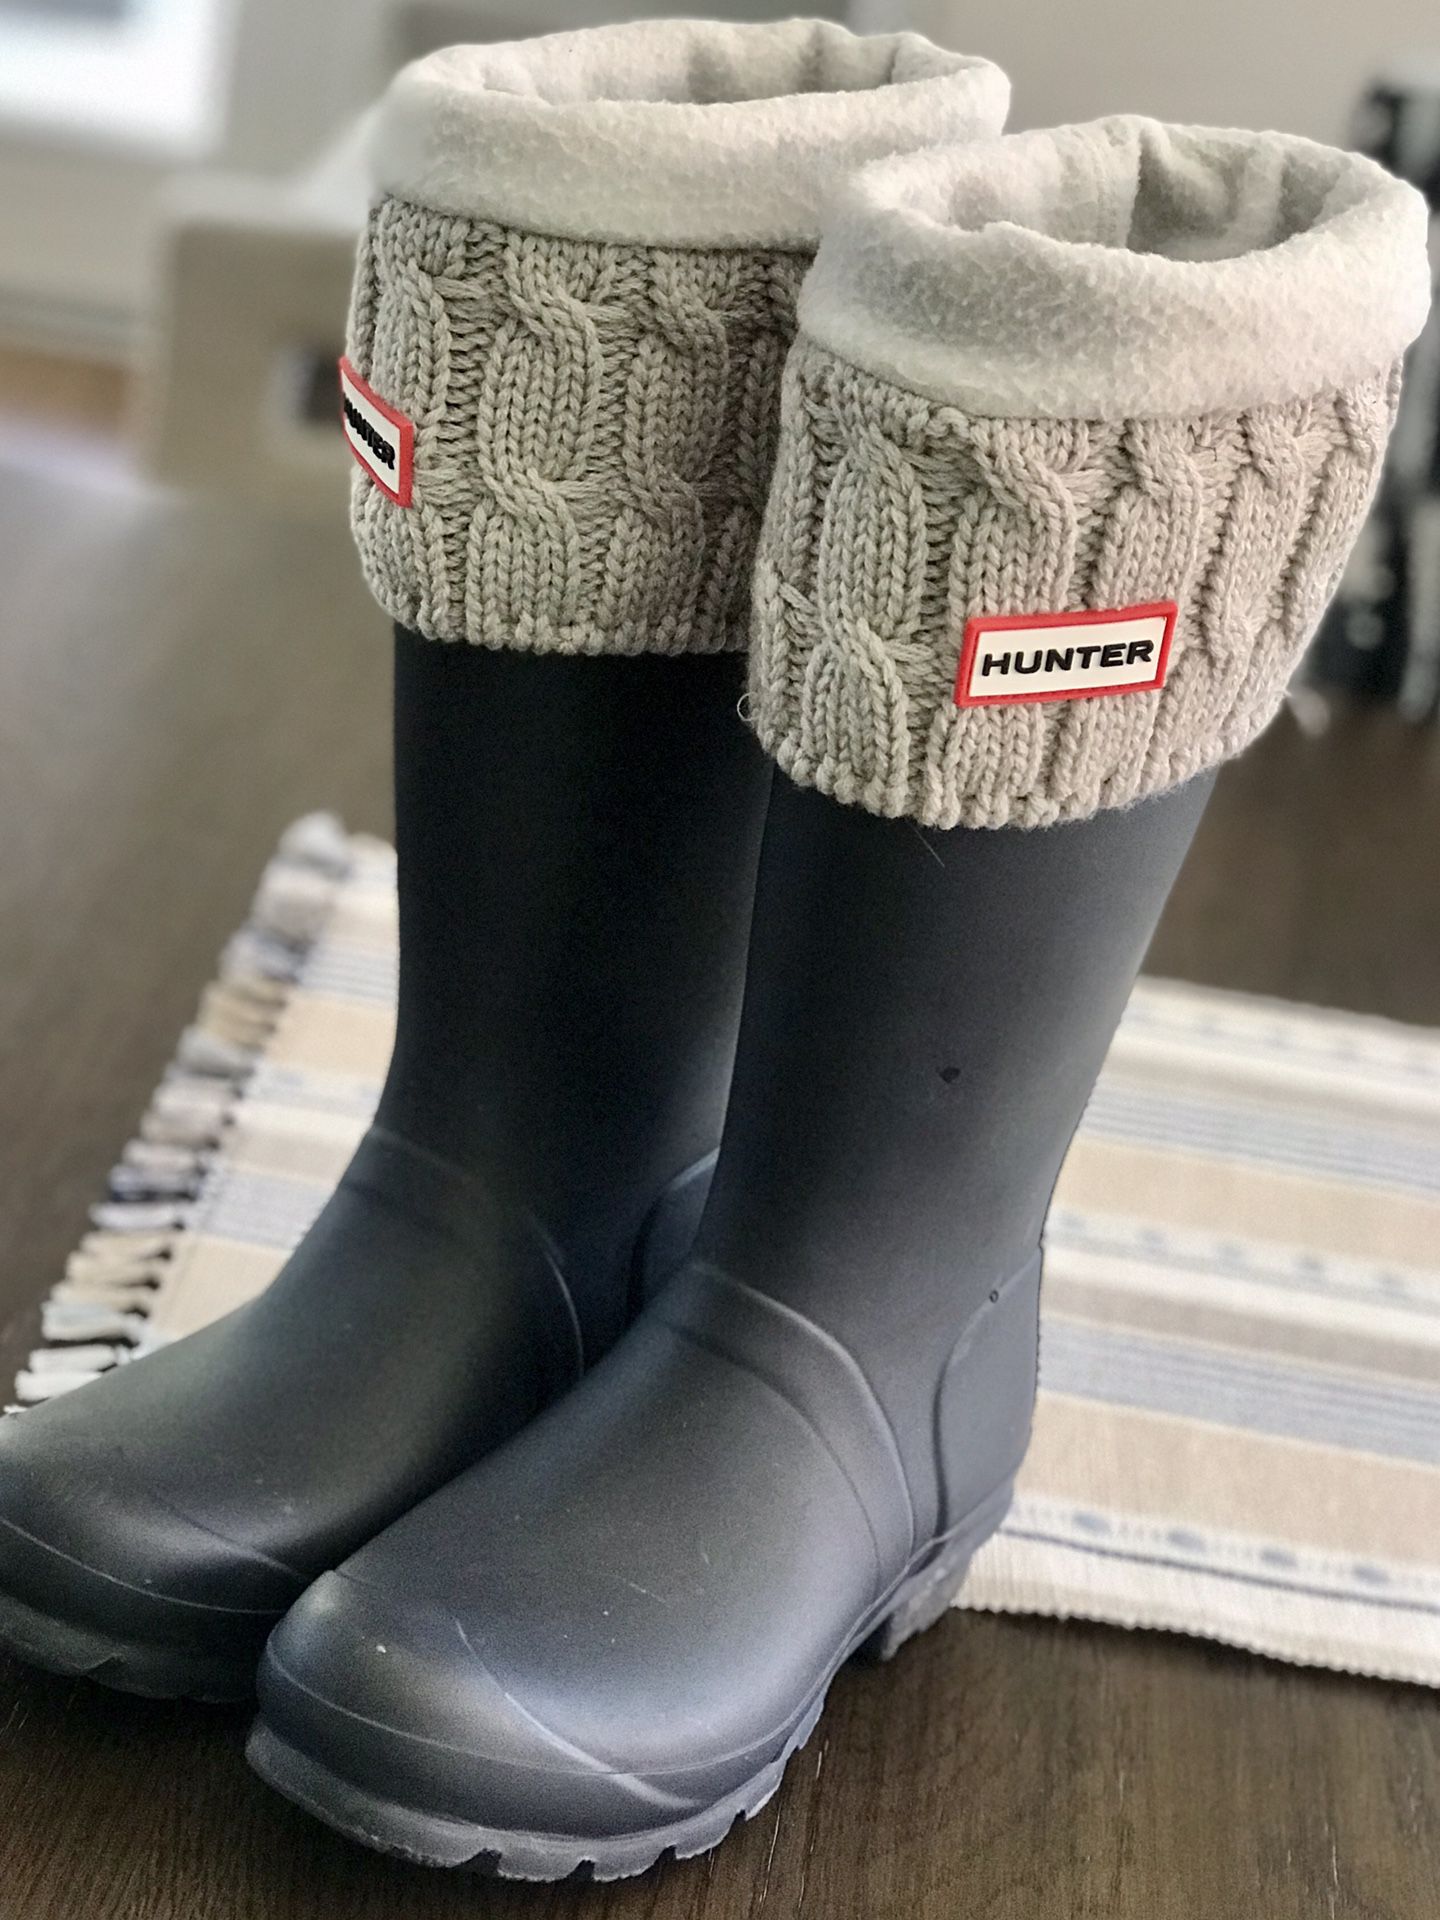 Size 6 Women’s Hunter Rain Boots